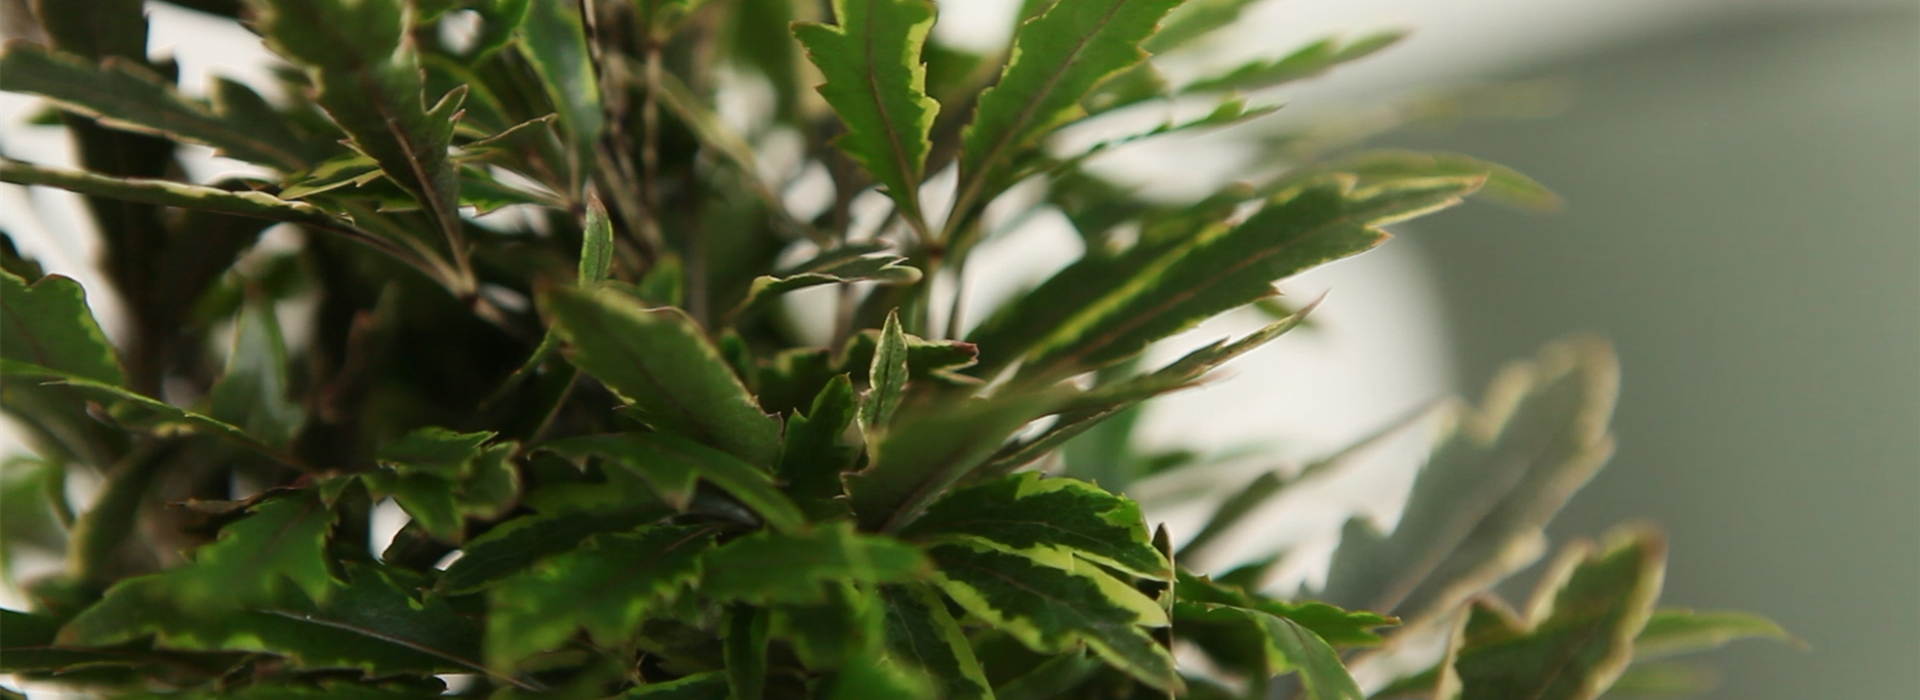 Fingeraralie - Einpflanzen in ein Gefäß (Thumbnail)